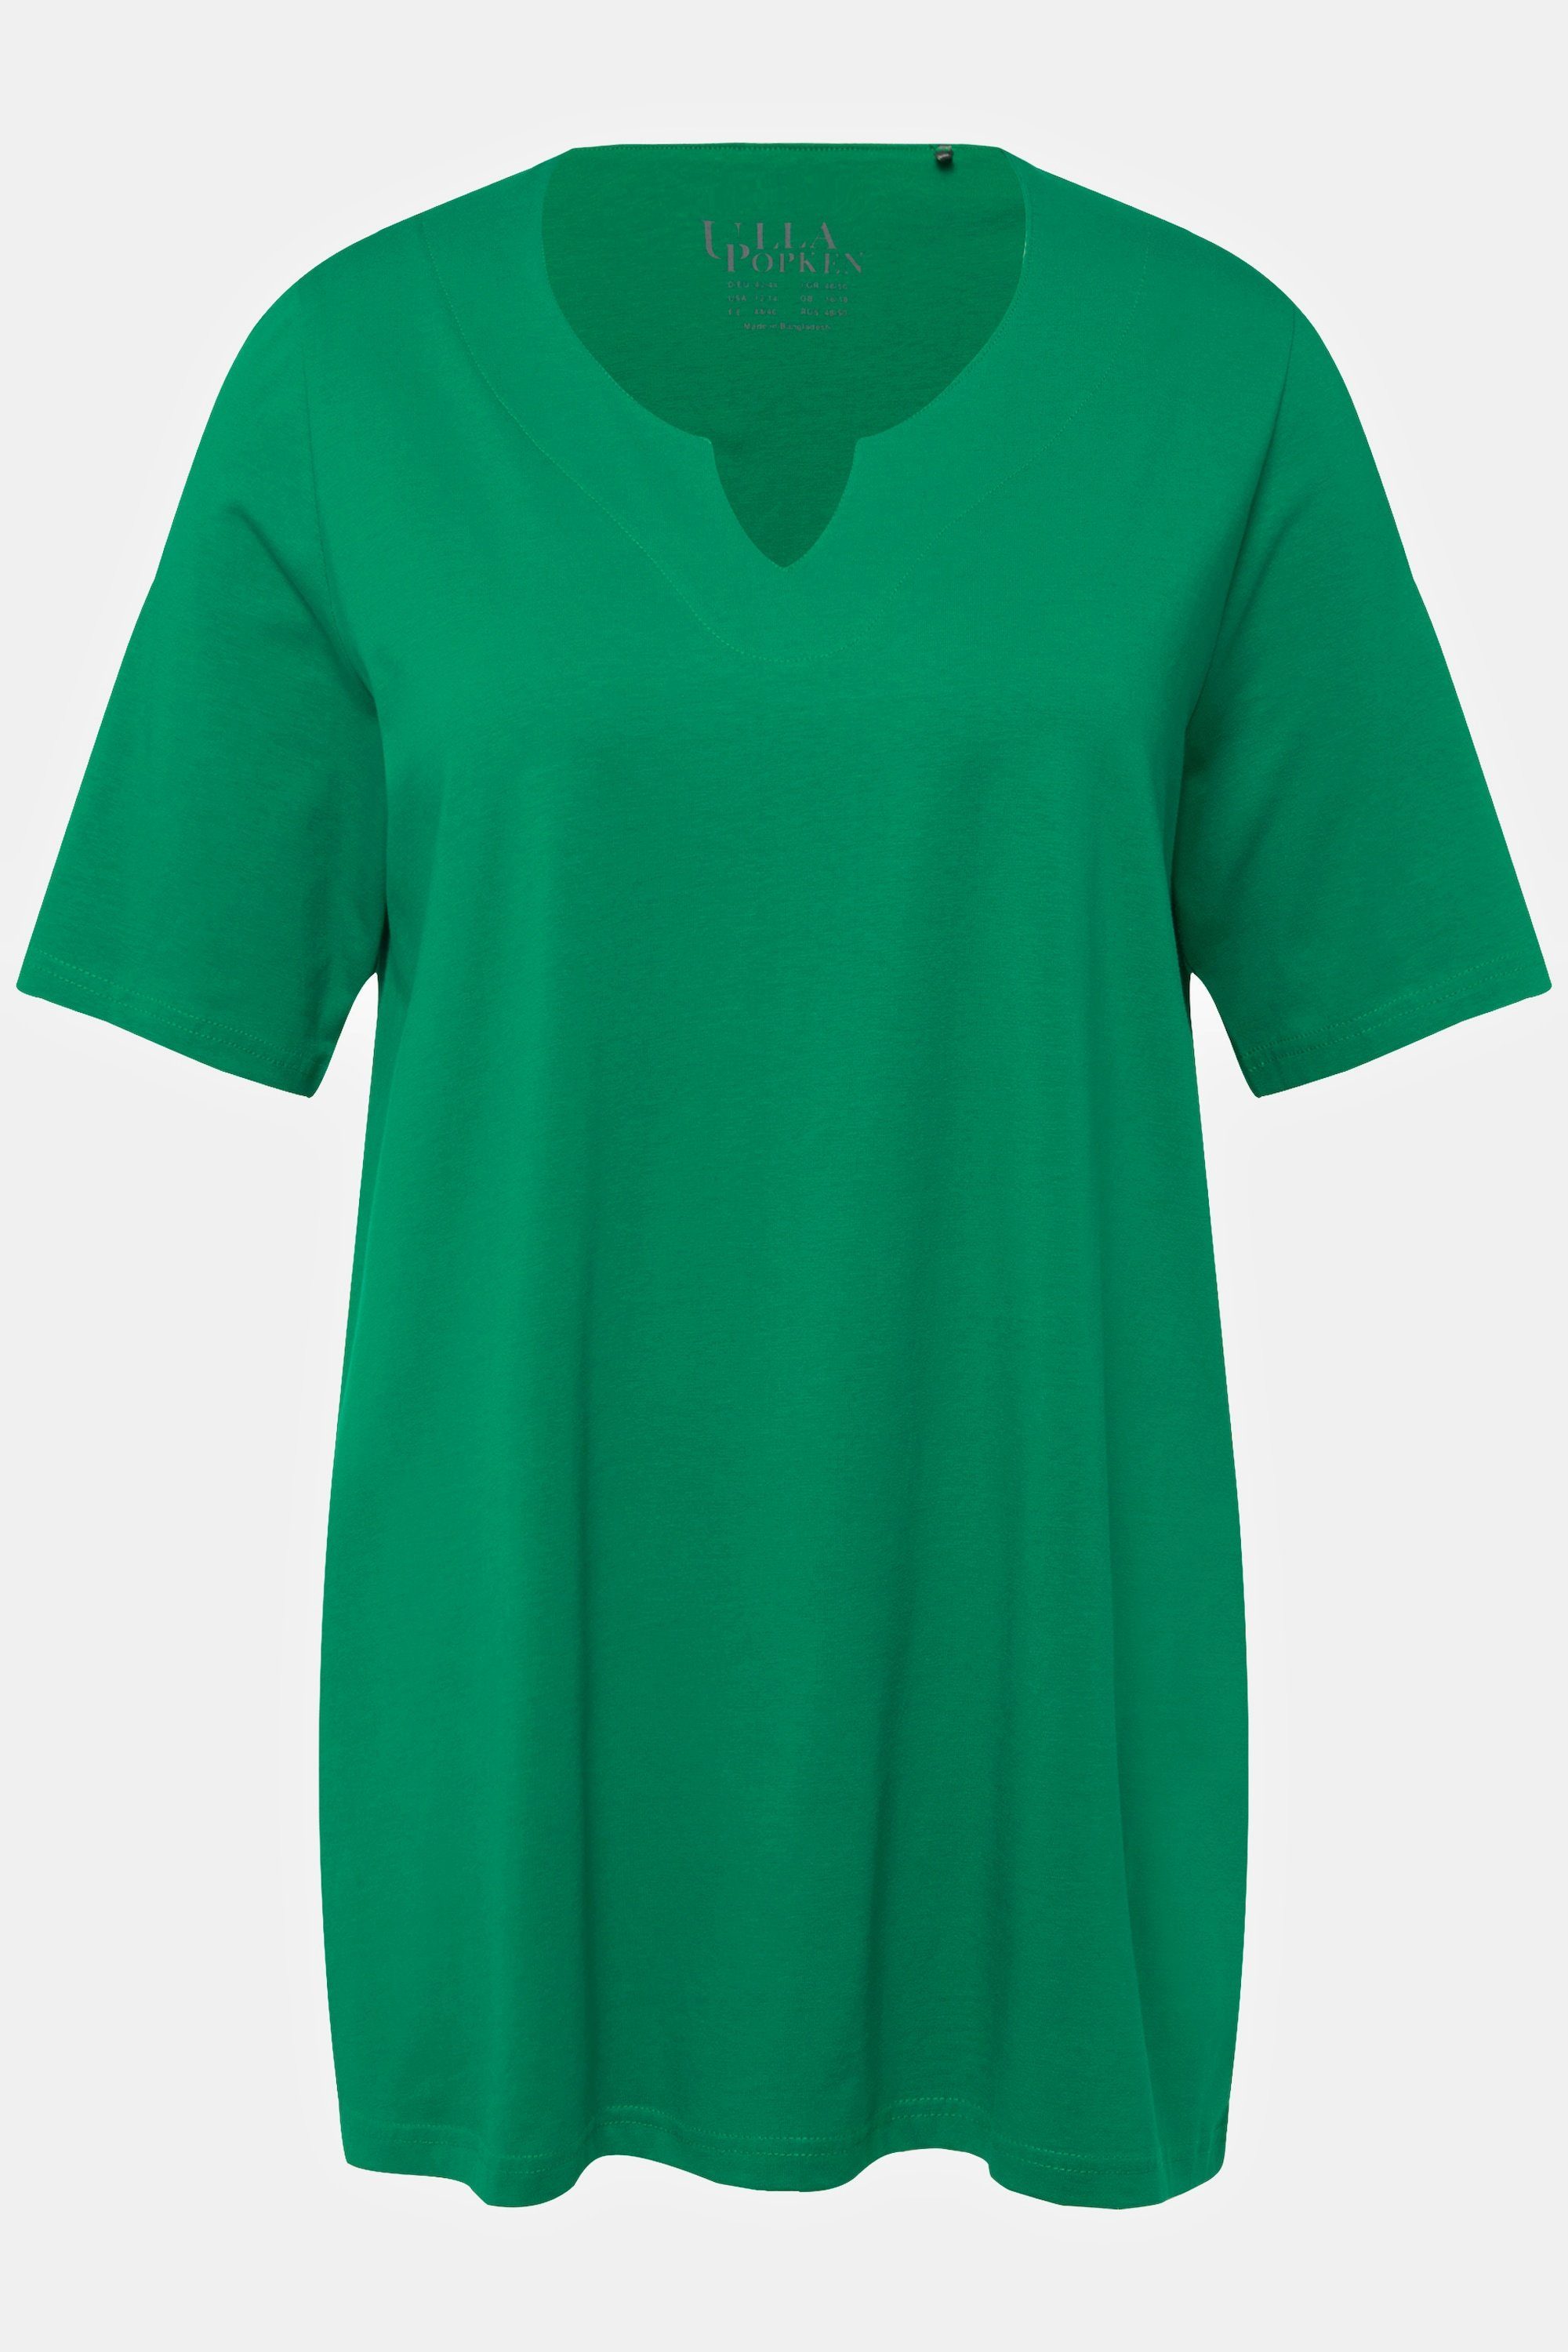 Ulla Popken Halbarm Tunika-Ausschnitt Rundhalsshirt A-Linie T-Shirt smaragdgrün